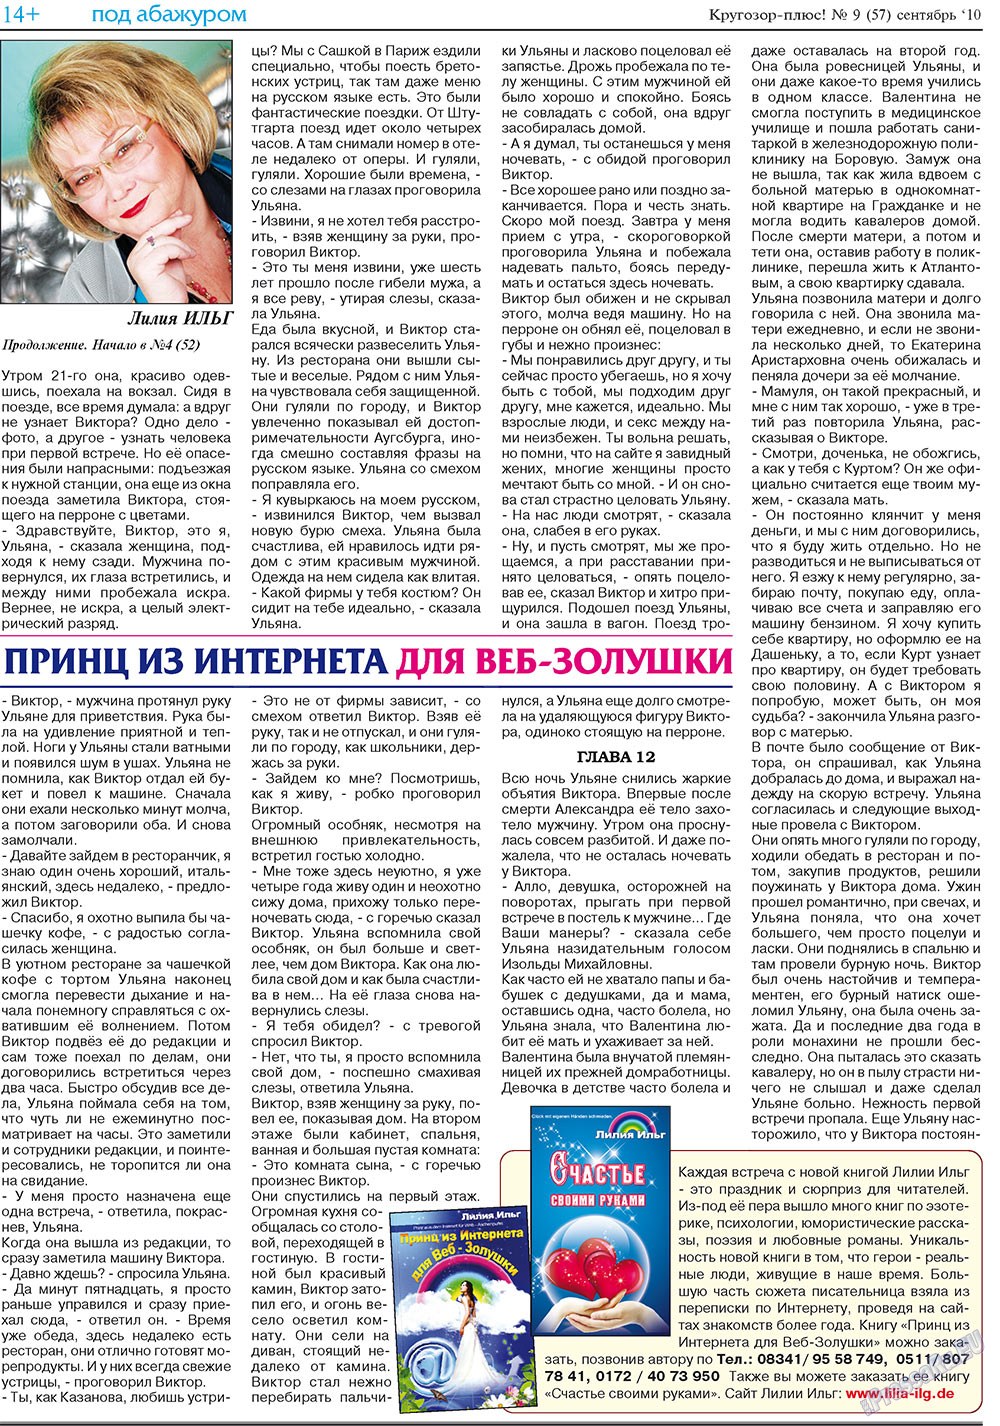 Кругозор плюс!, газета. 2010 №9 стр.30